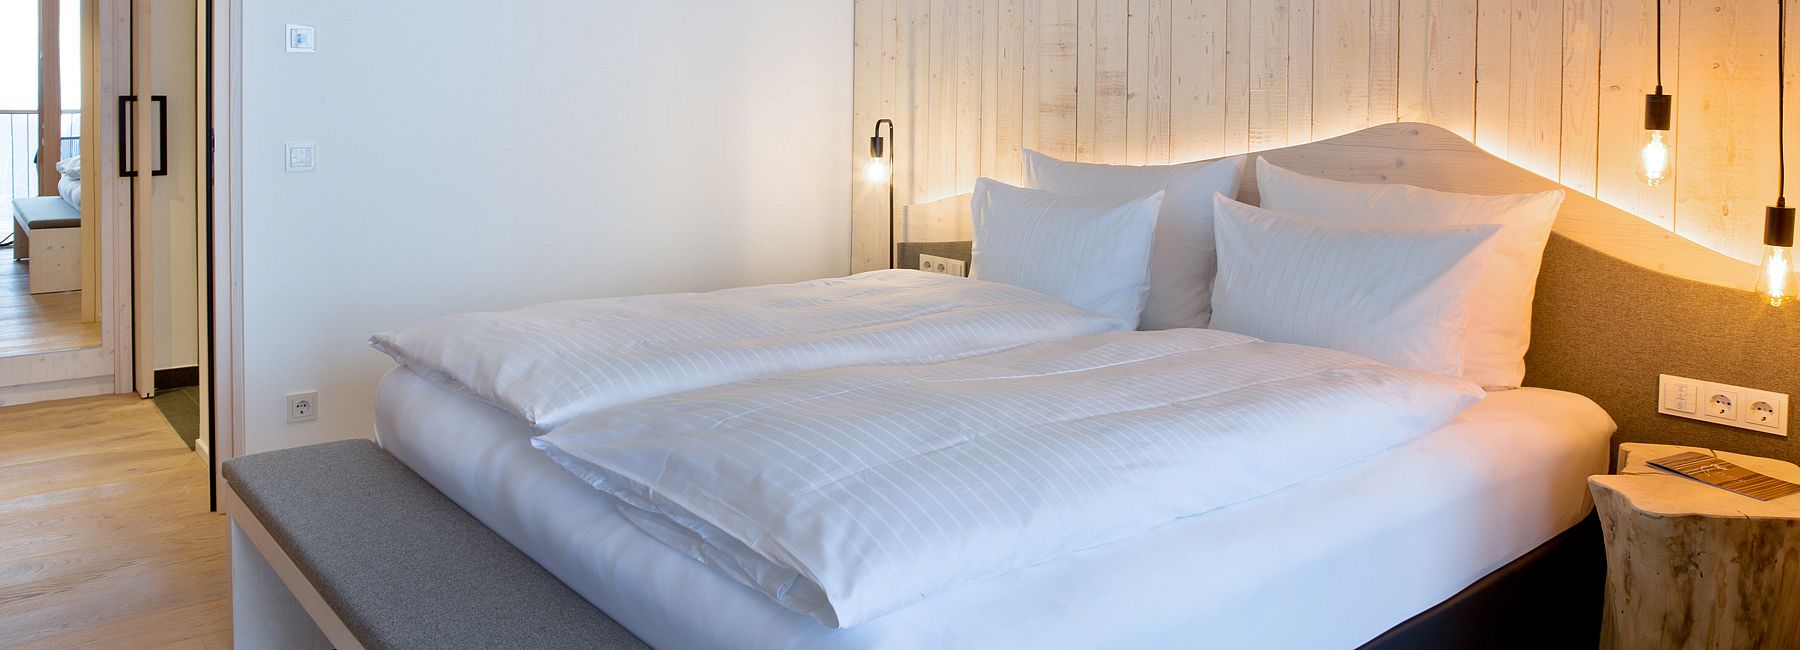 Doppelbett mit Holzkopfteil, indirekter Beleuchtung und eleganten Retro-Lampen